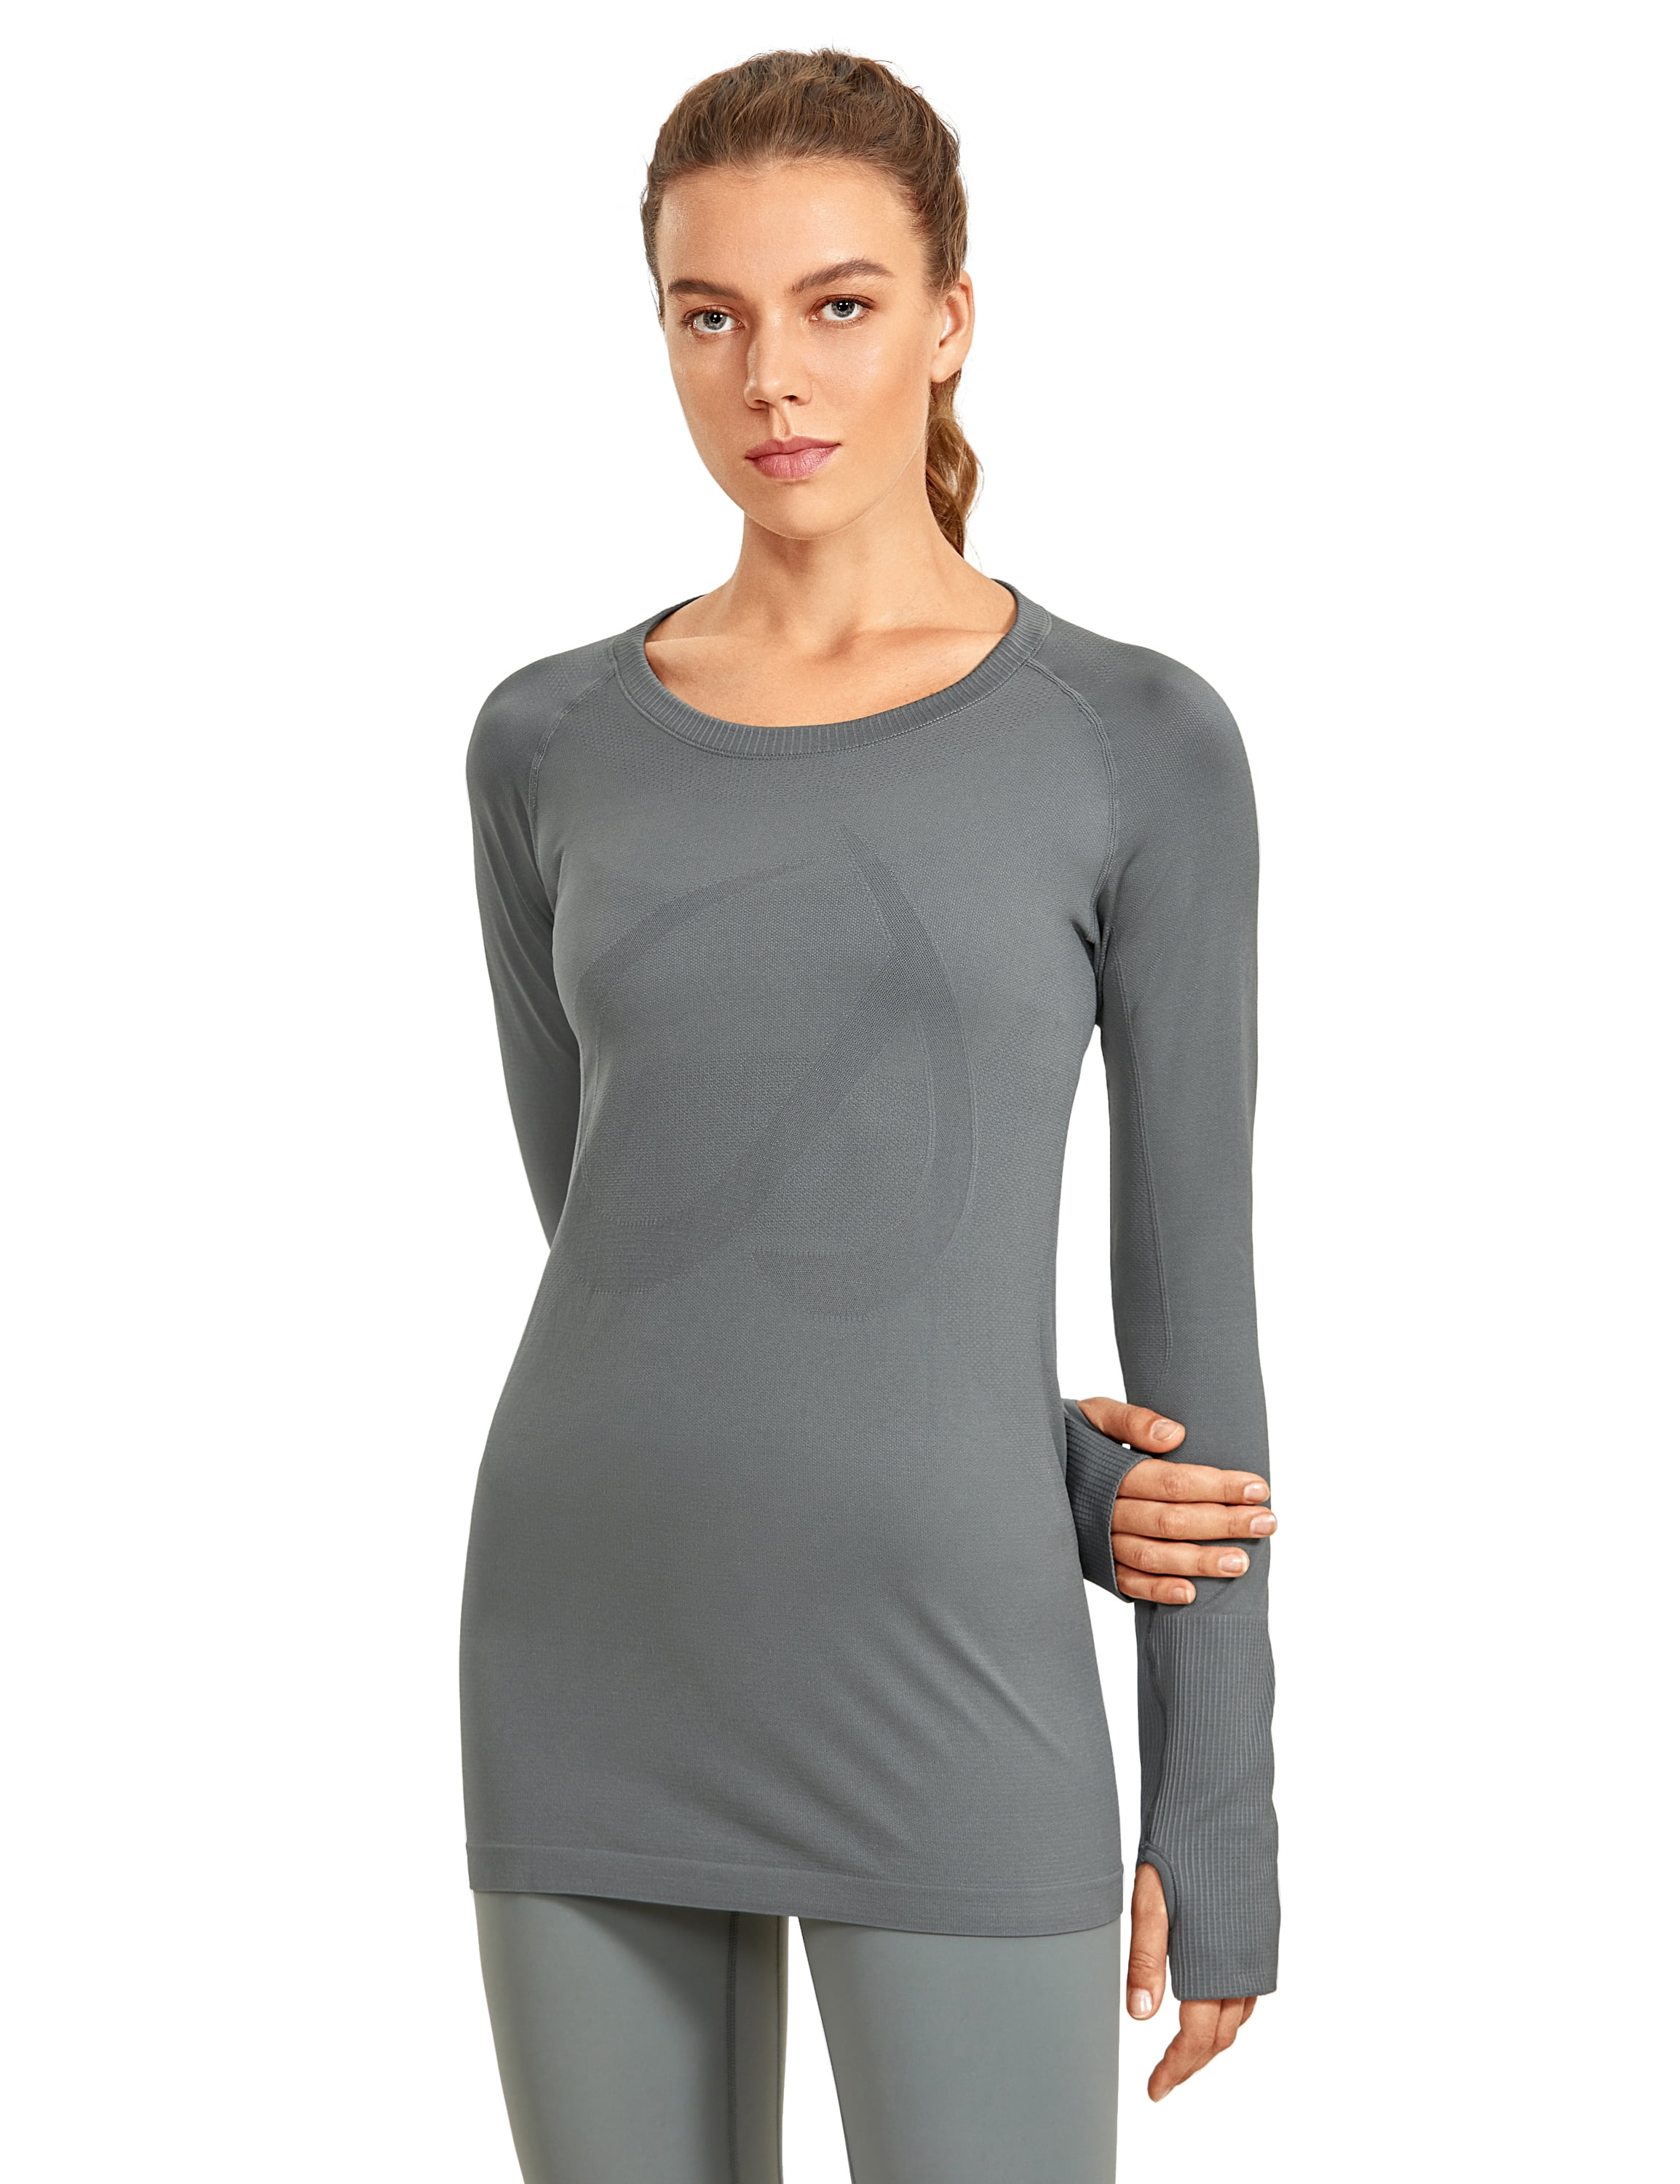 H.MILES Women’ s Half Zip Pullover Running Top Quick Dry Fleece Shirt Long Sleeve Yoga Track Jacket